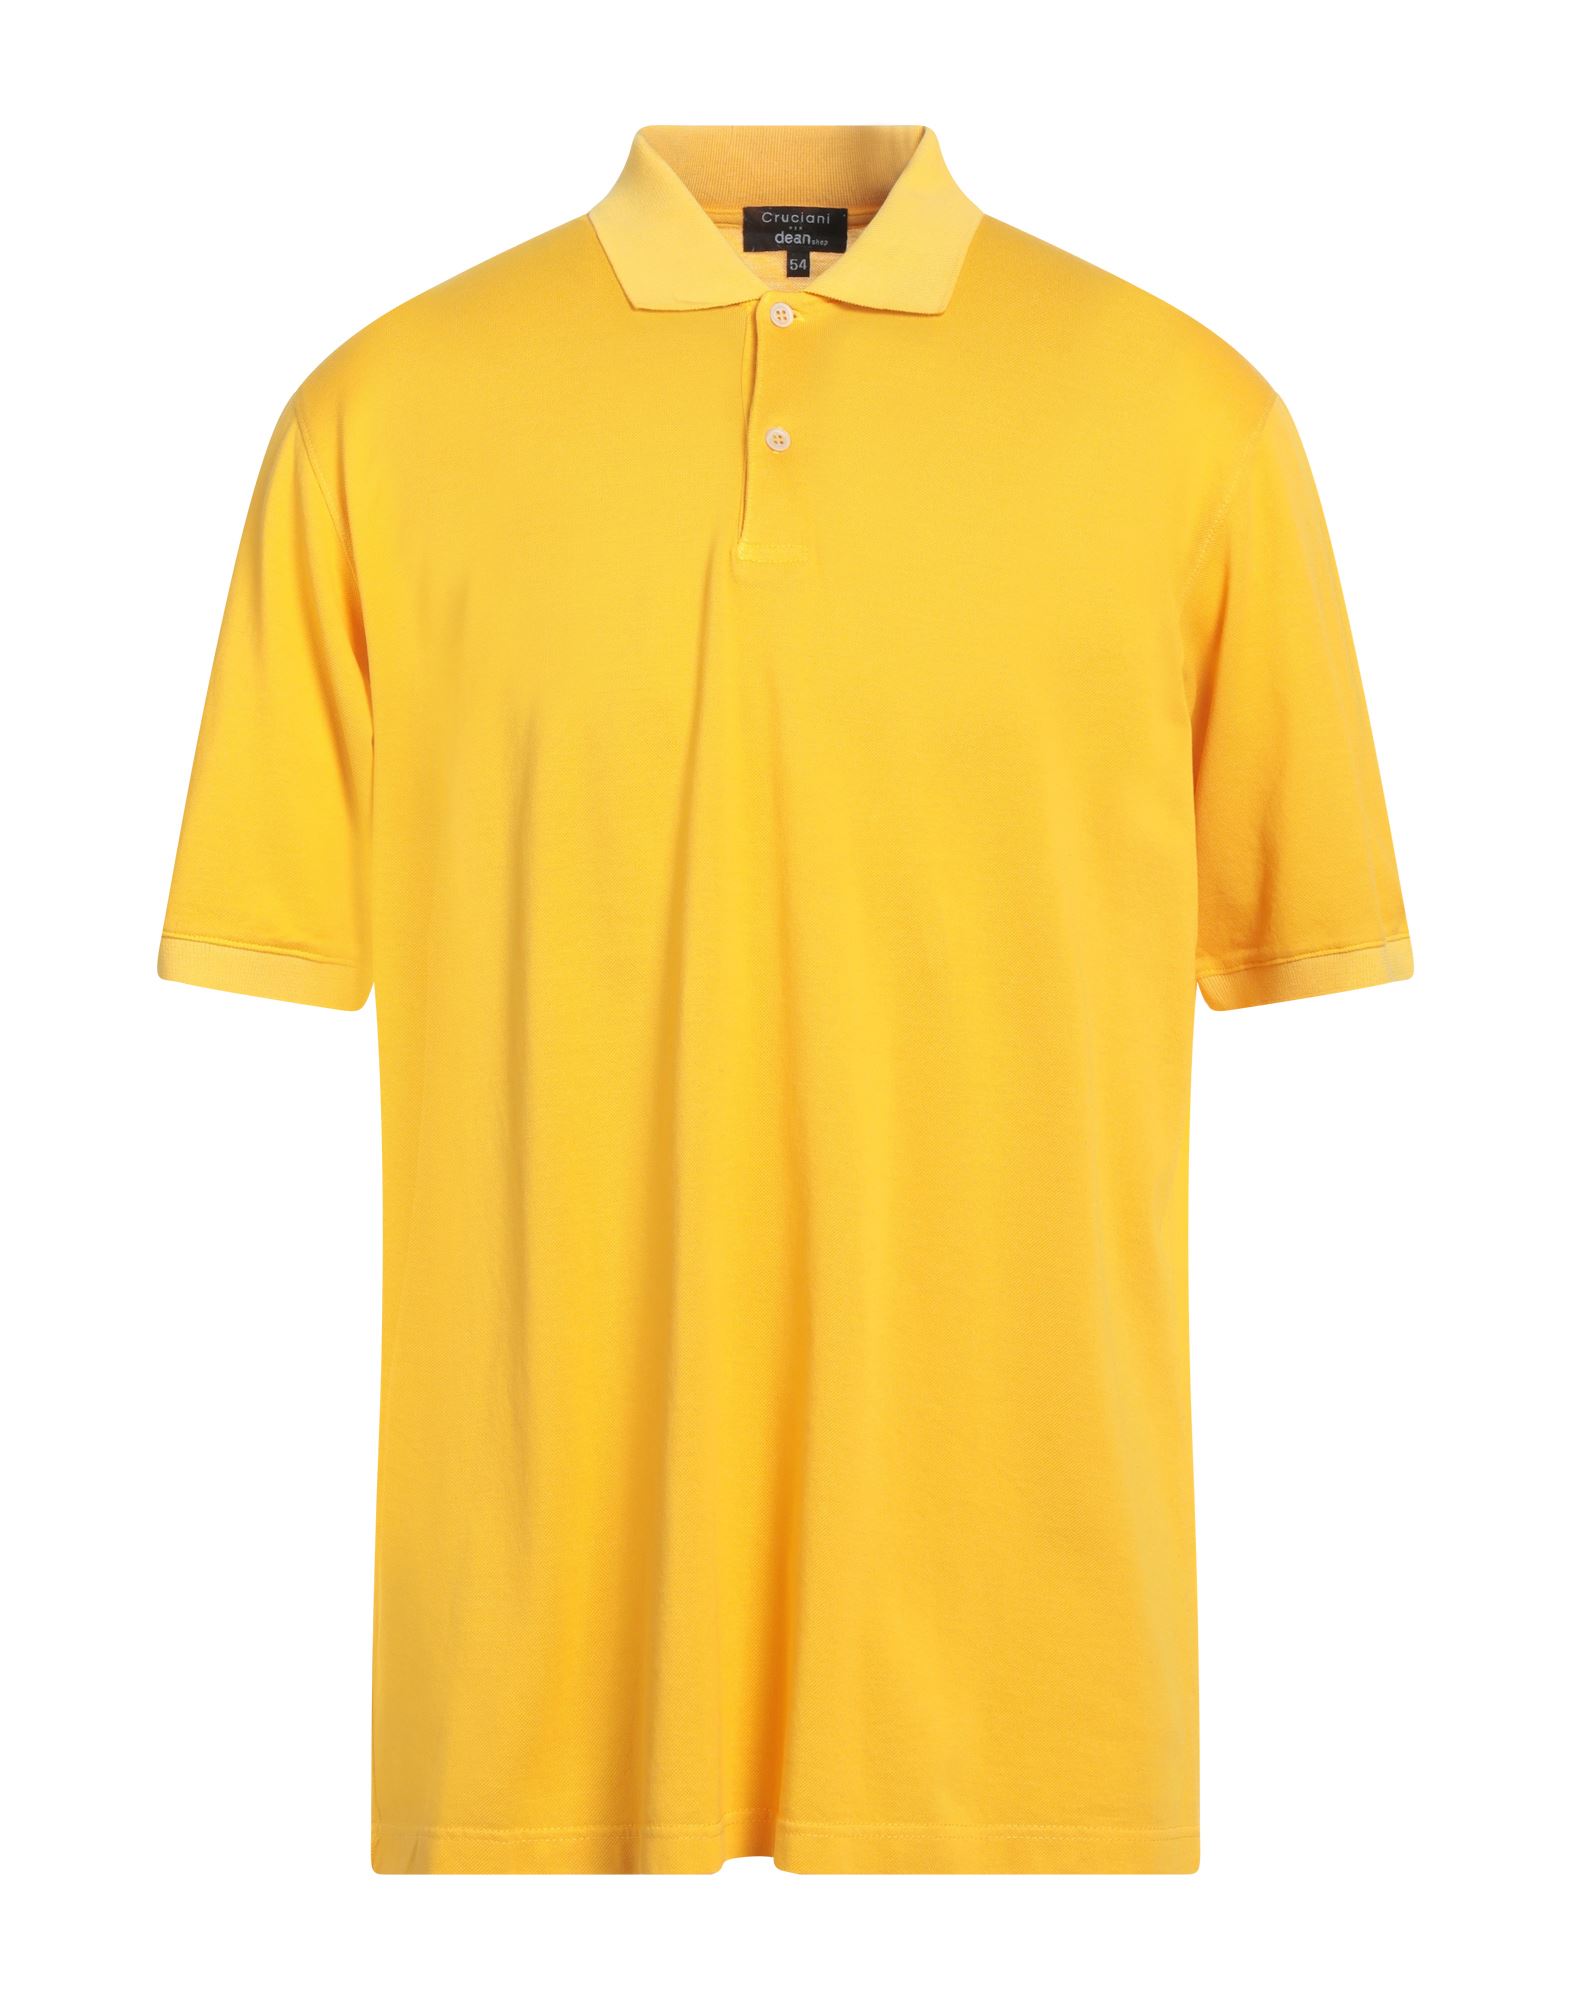 クルチアーニ(Cruciani) メンズポロシャツ | 通販・人気